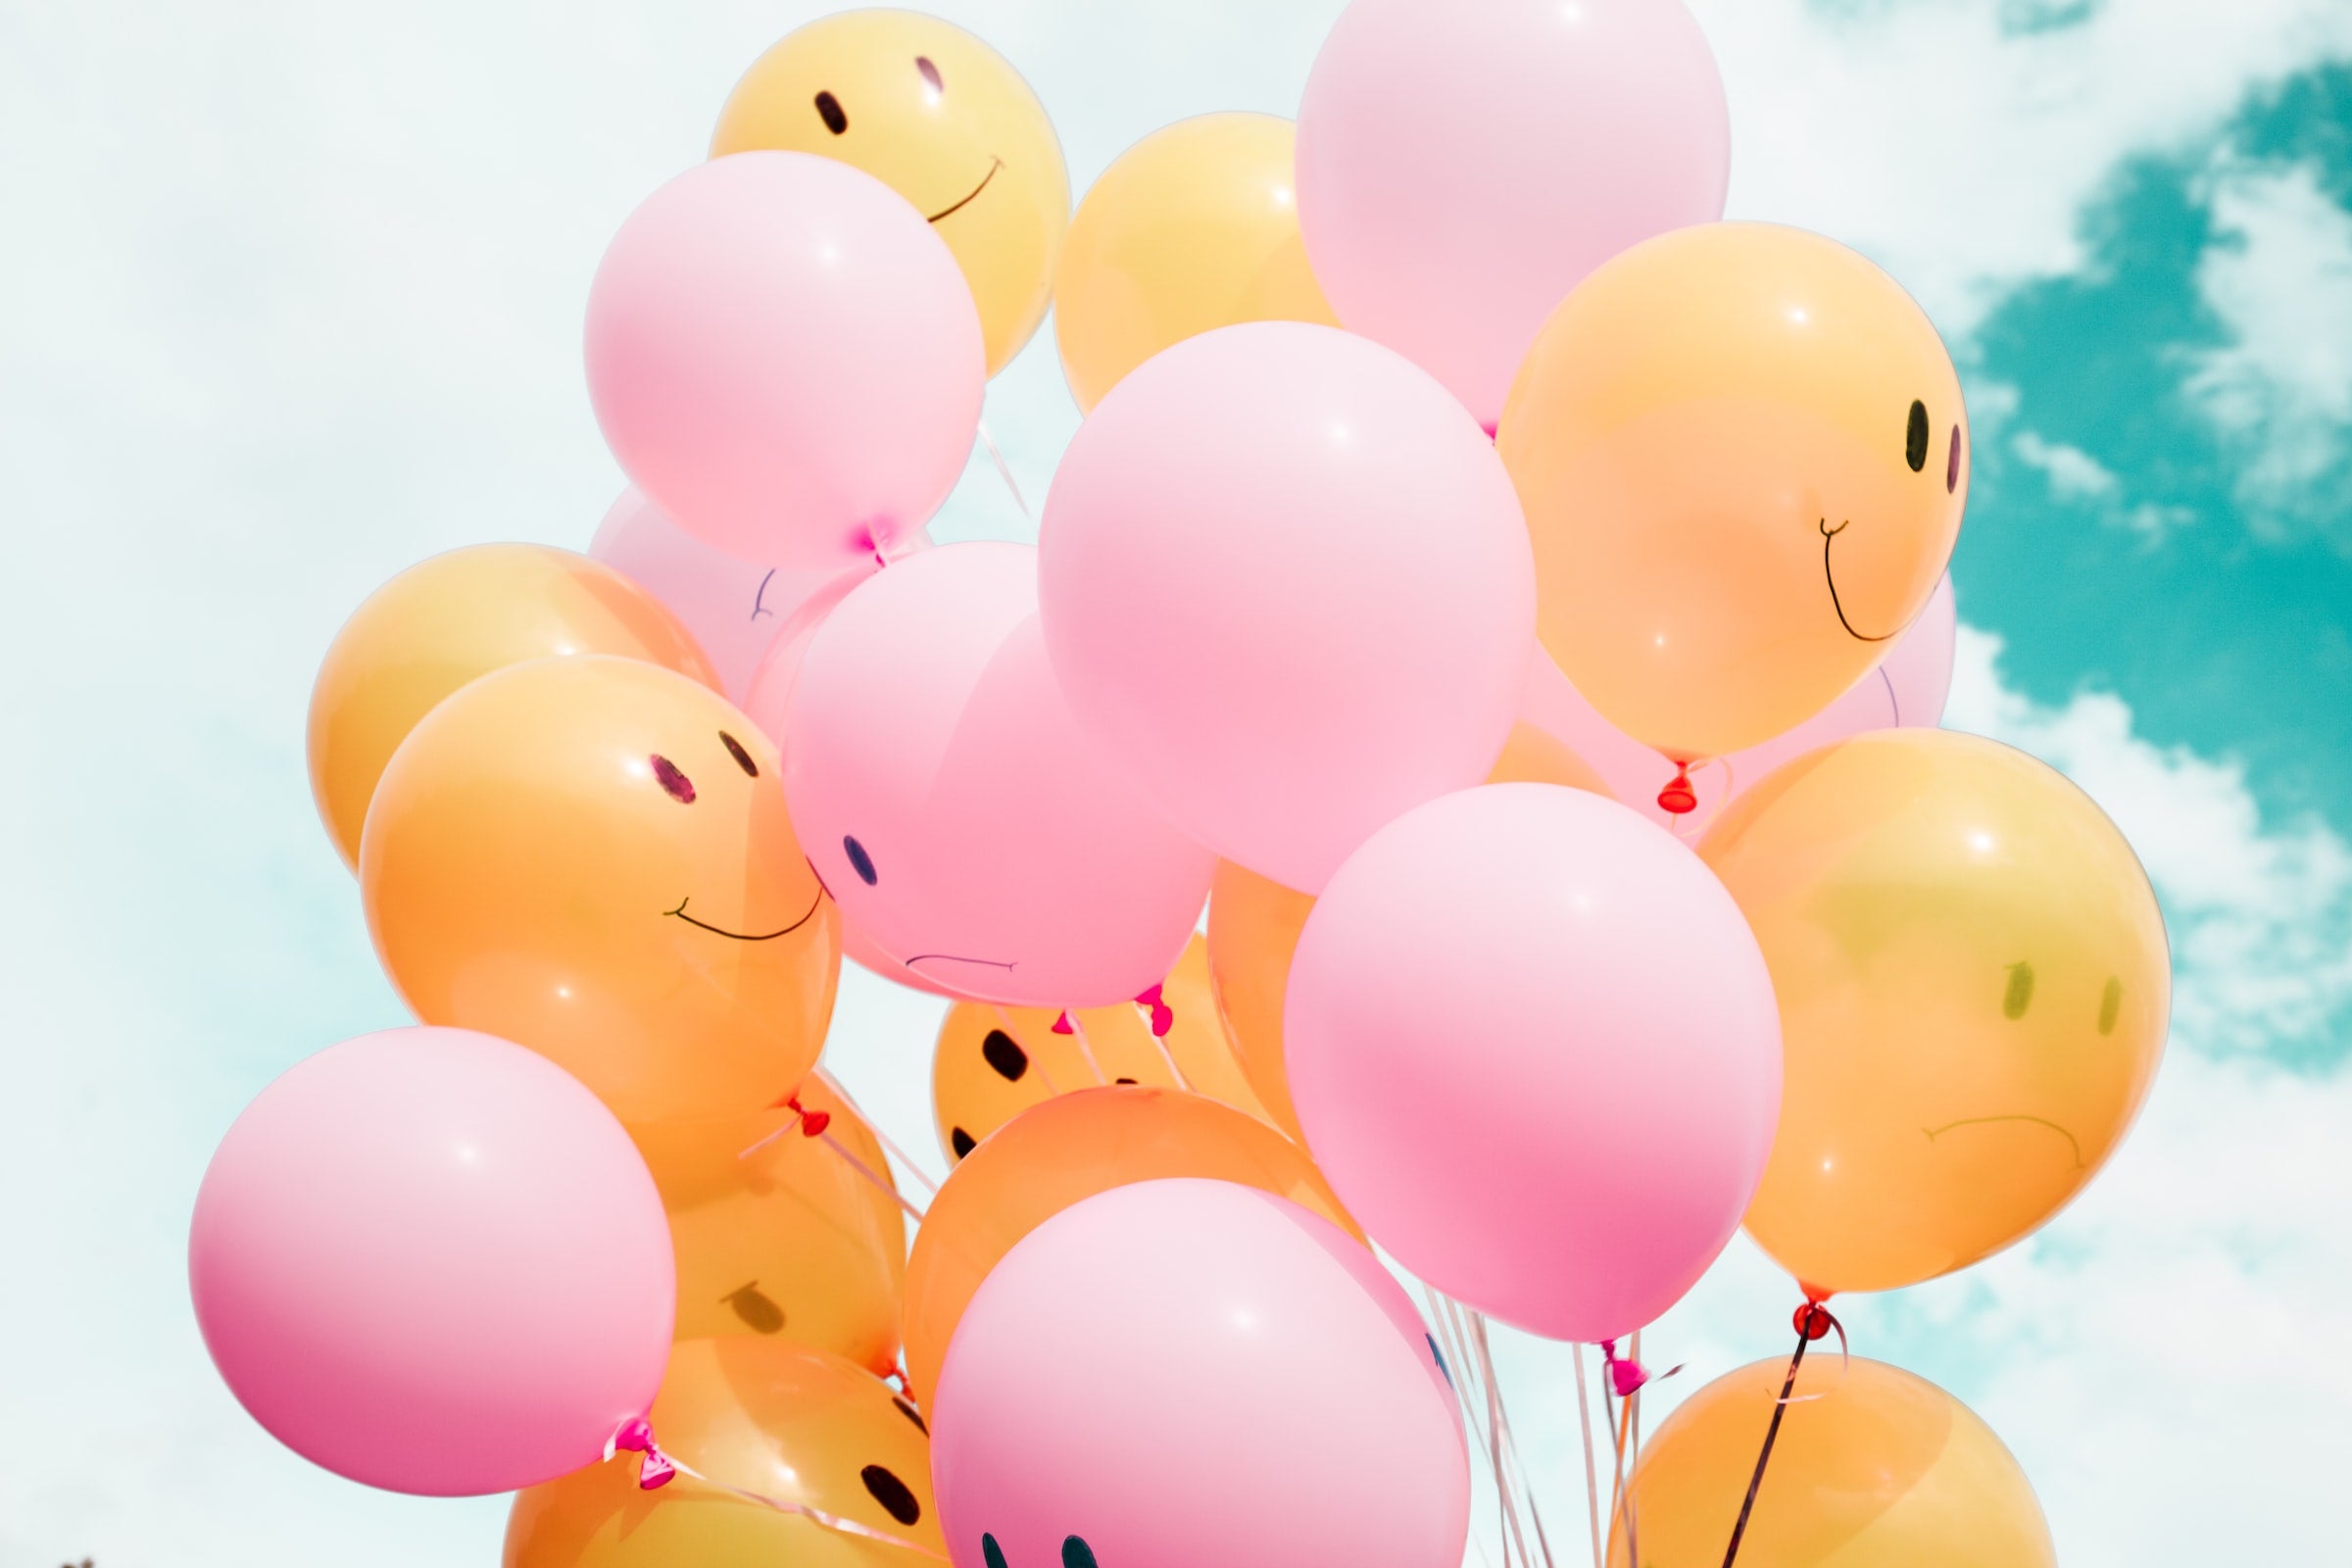 exercices pensée positive pour être heureux smiley ballons